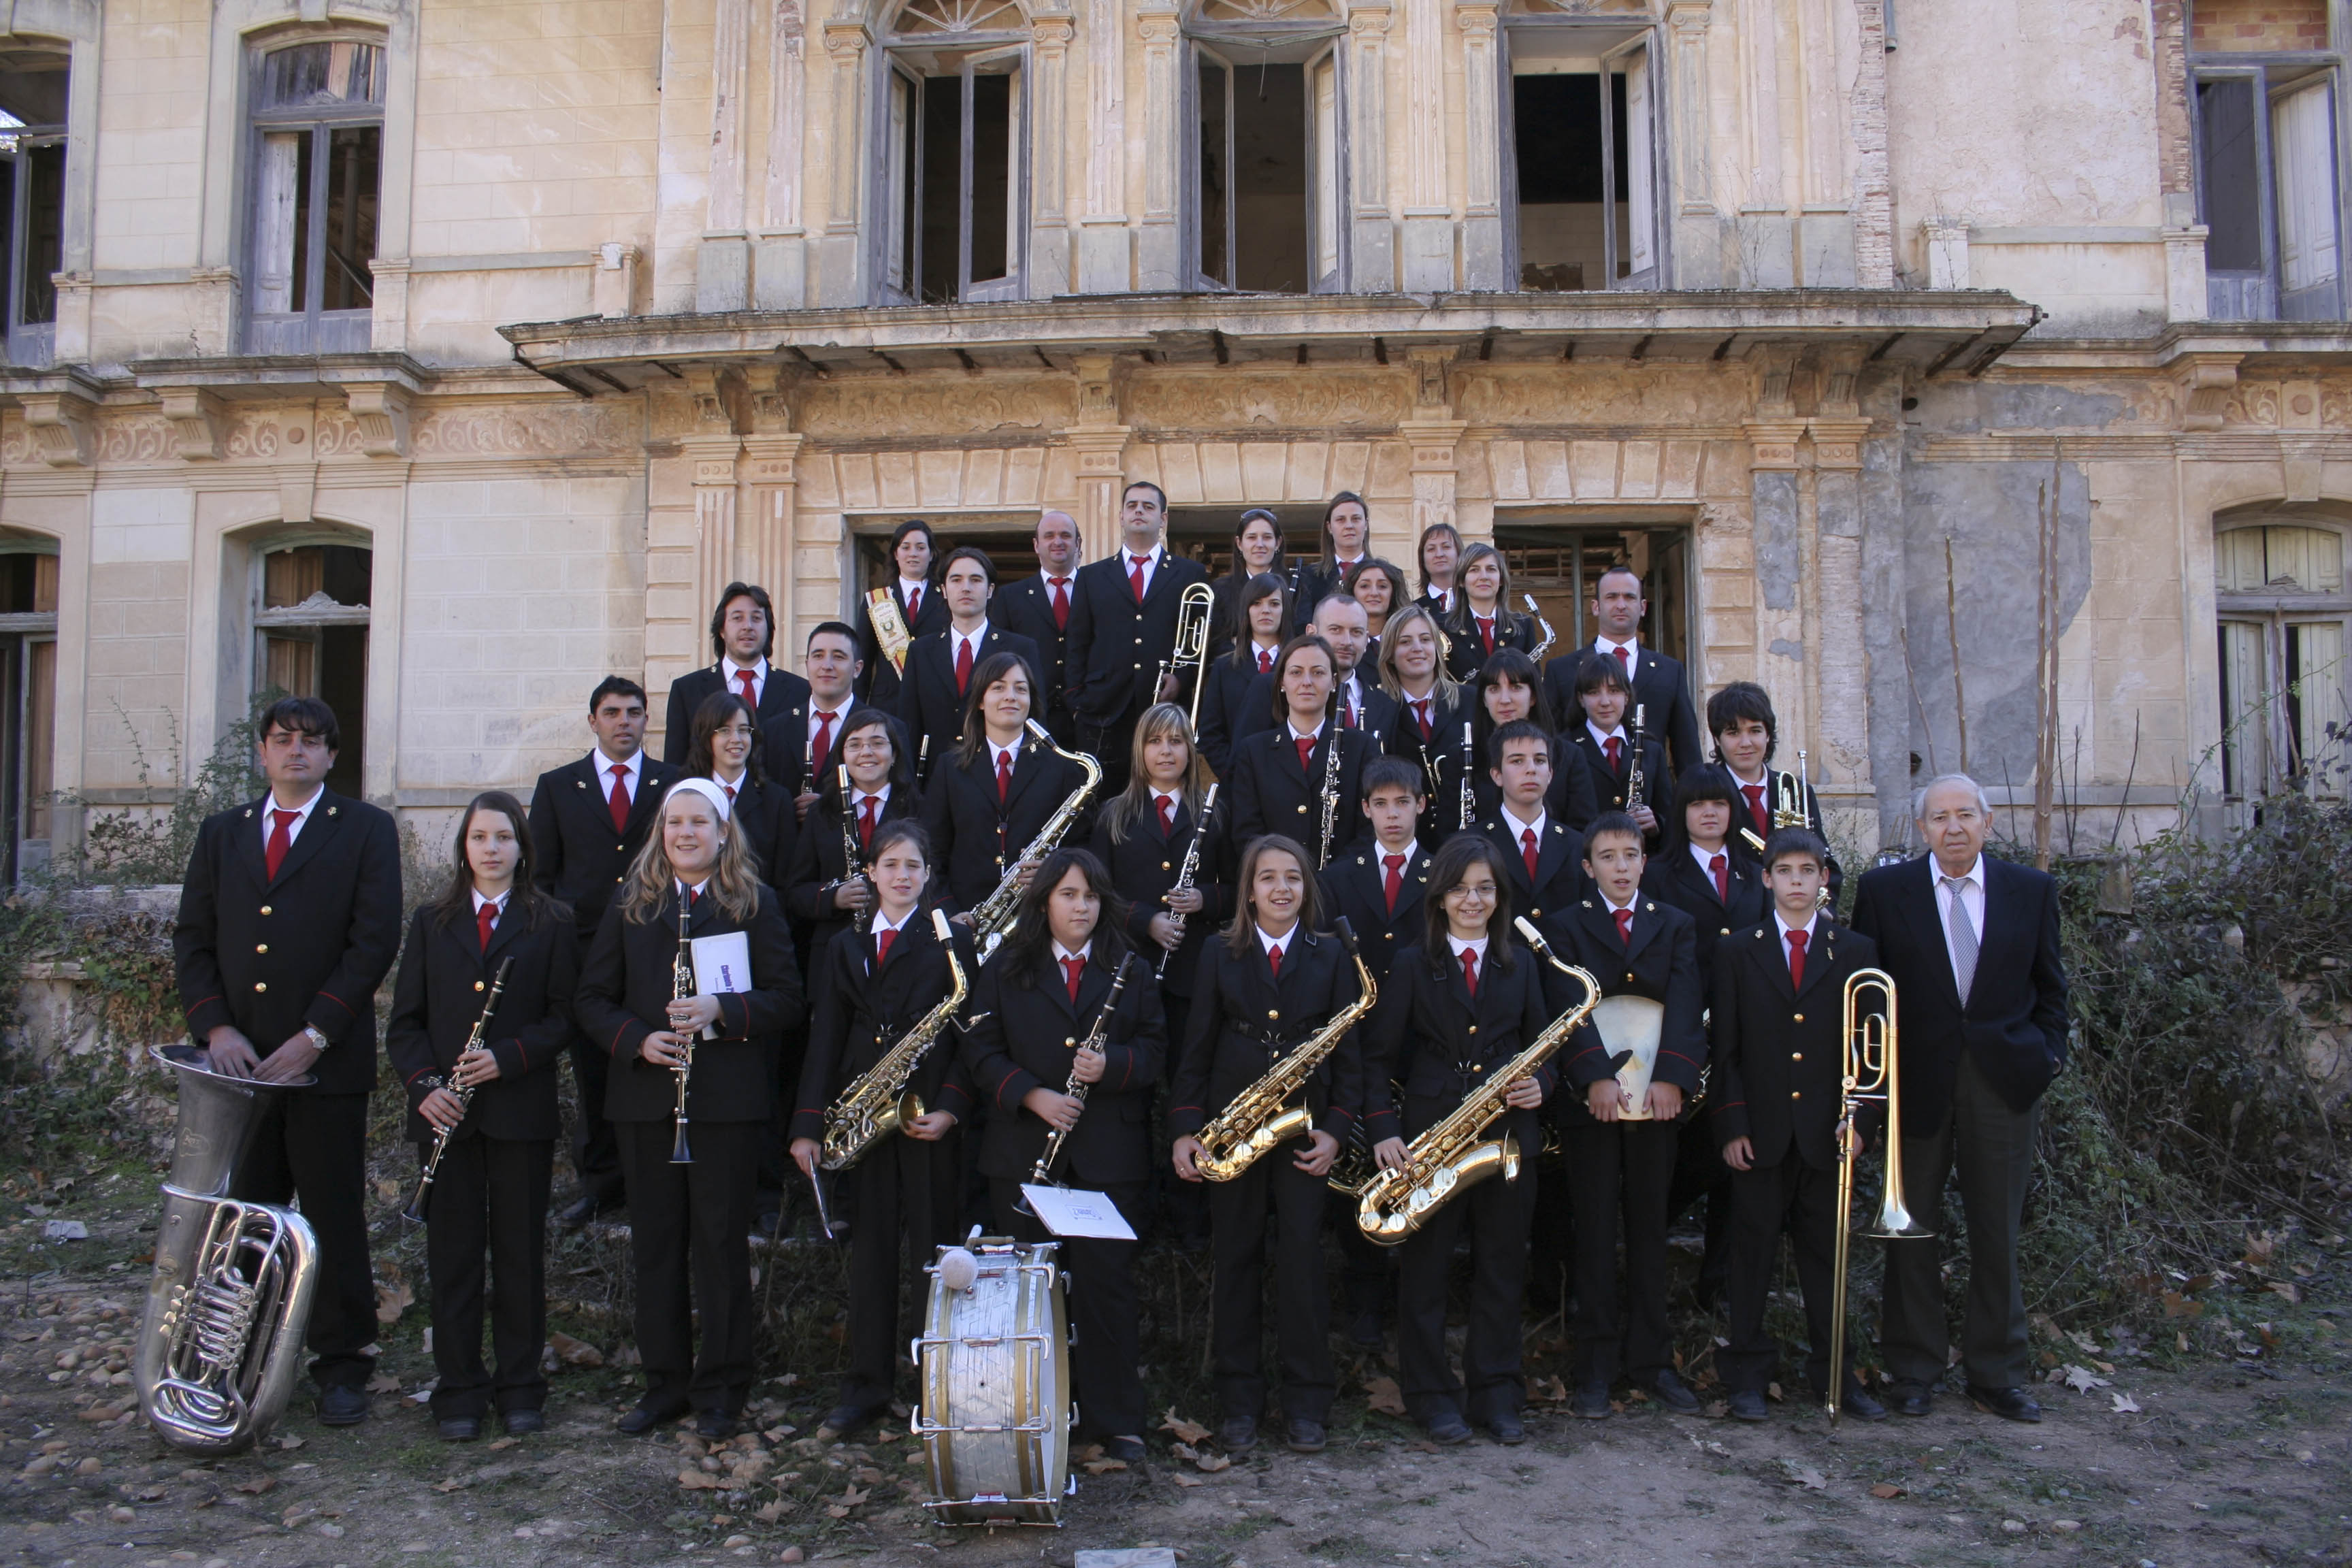 La Diputación de Albacete celebra el Día Europeo de la Música reiterando su compromiso con las Escuelas, Academias y Bandas de la provincia